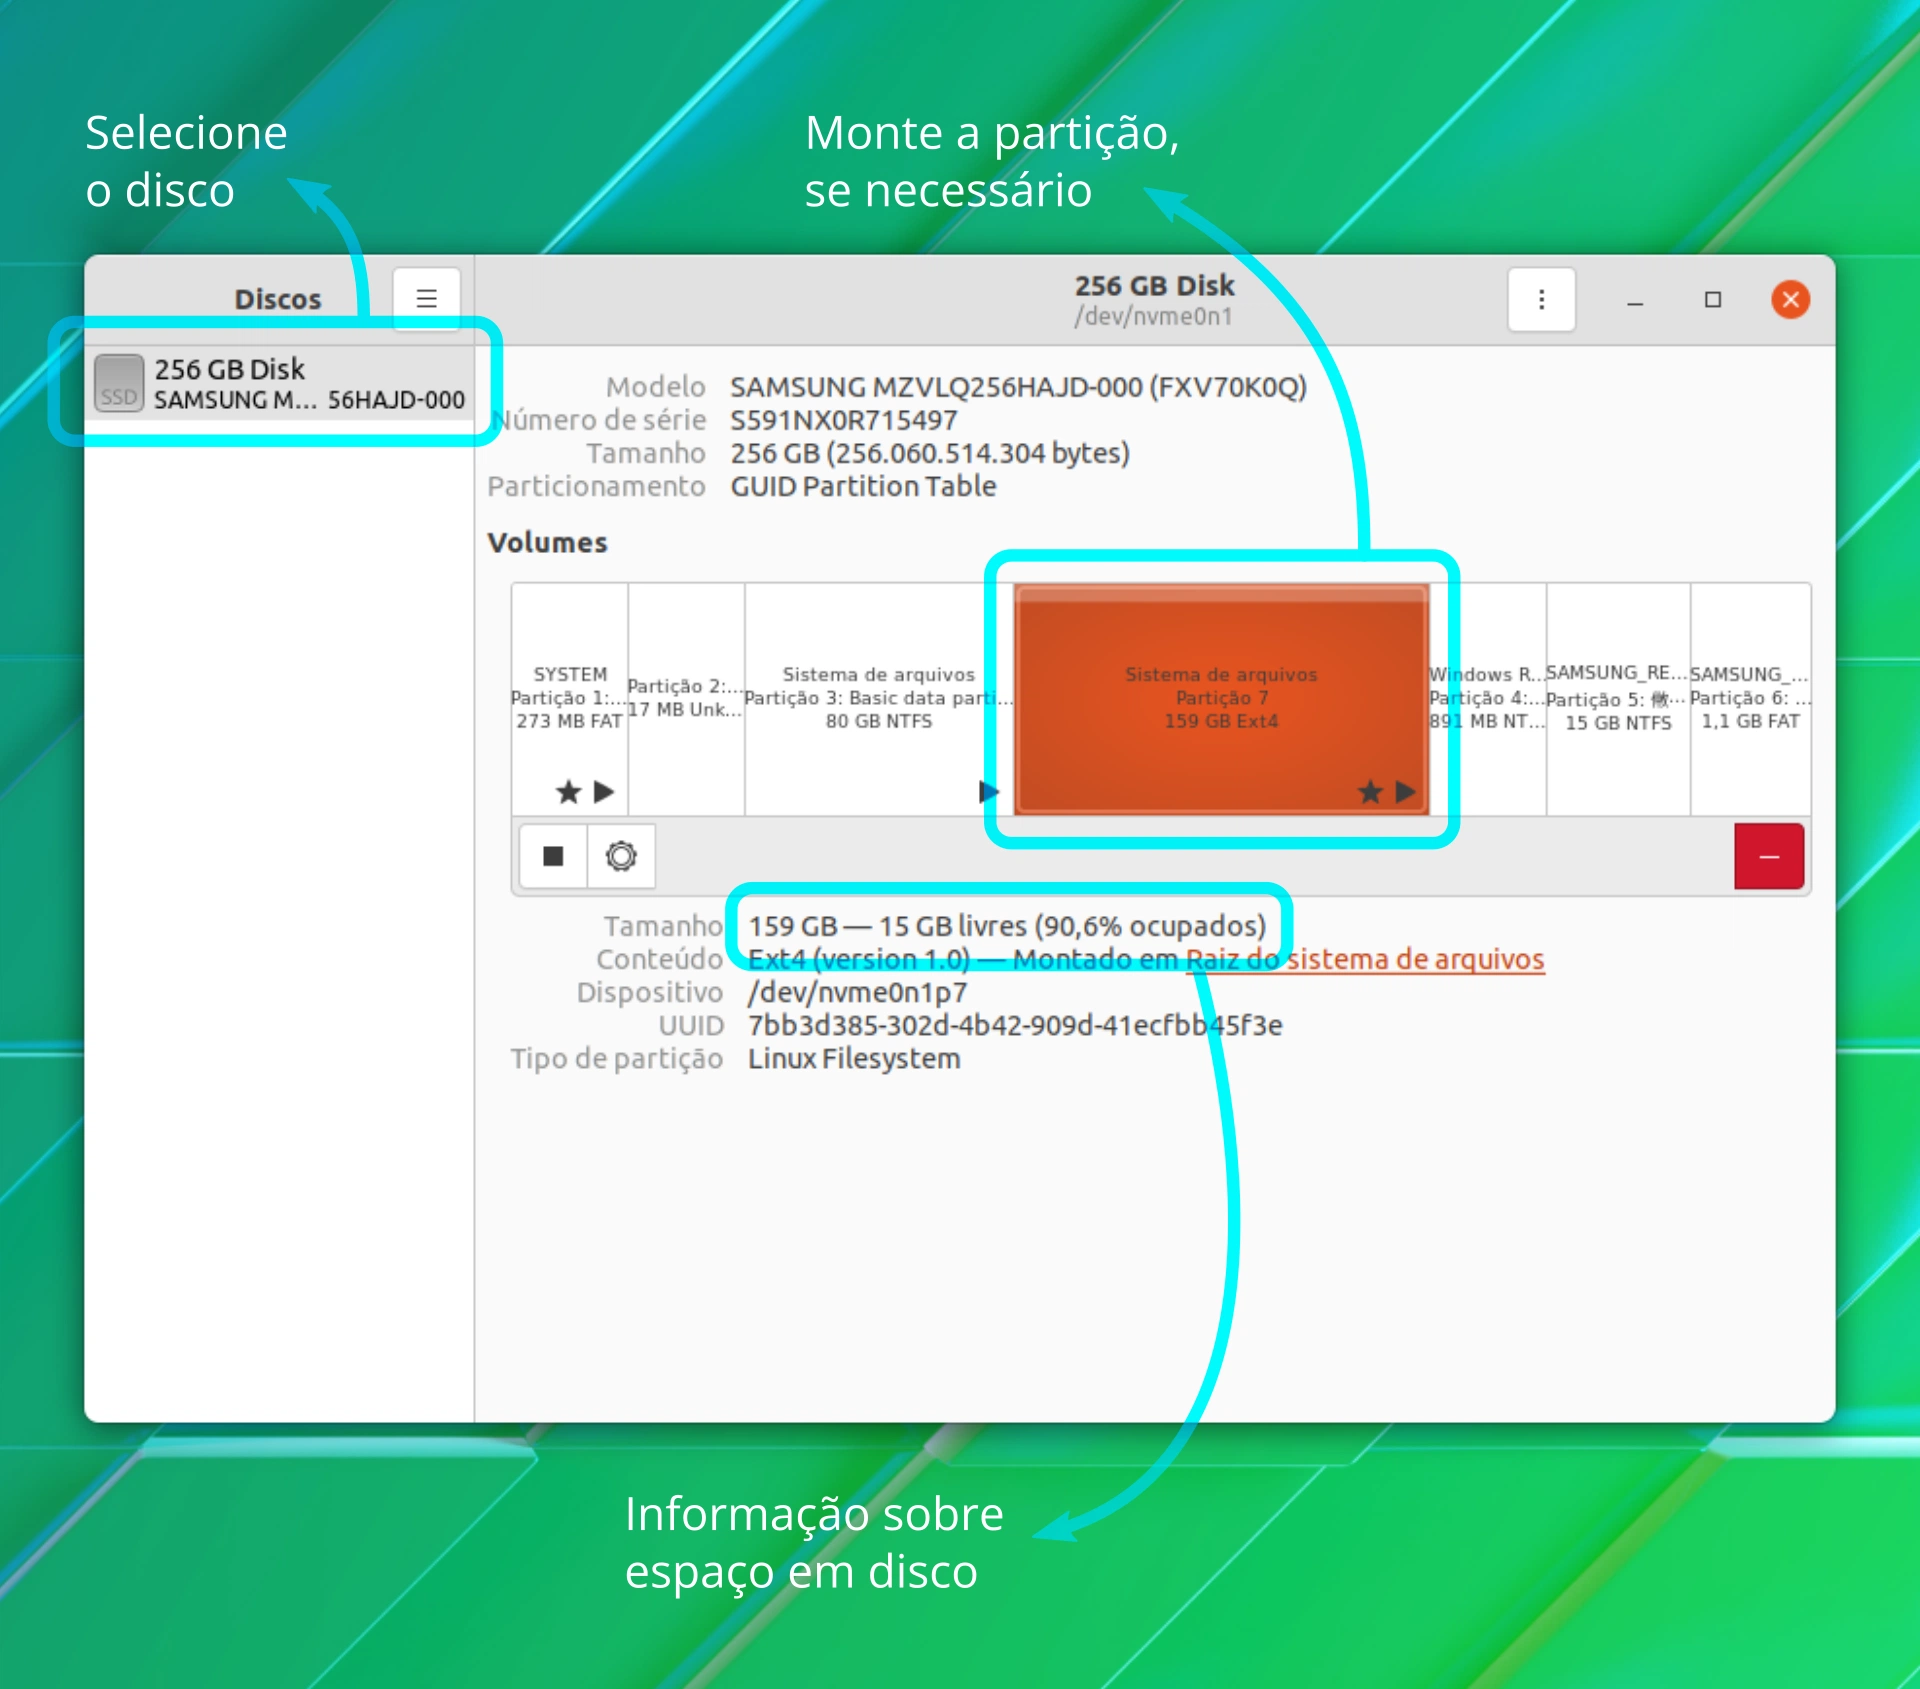 Janela do aplicativo GNOME Discos mostrando uma partição e informações do disco e partição